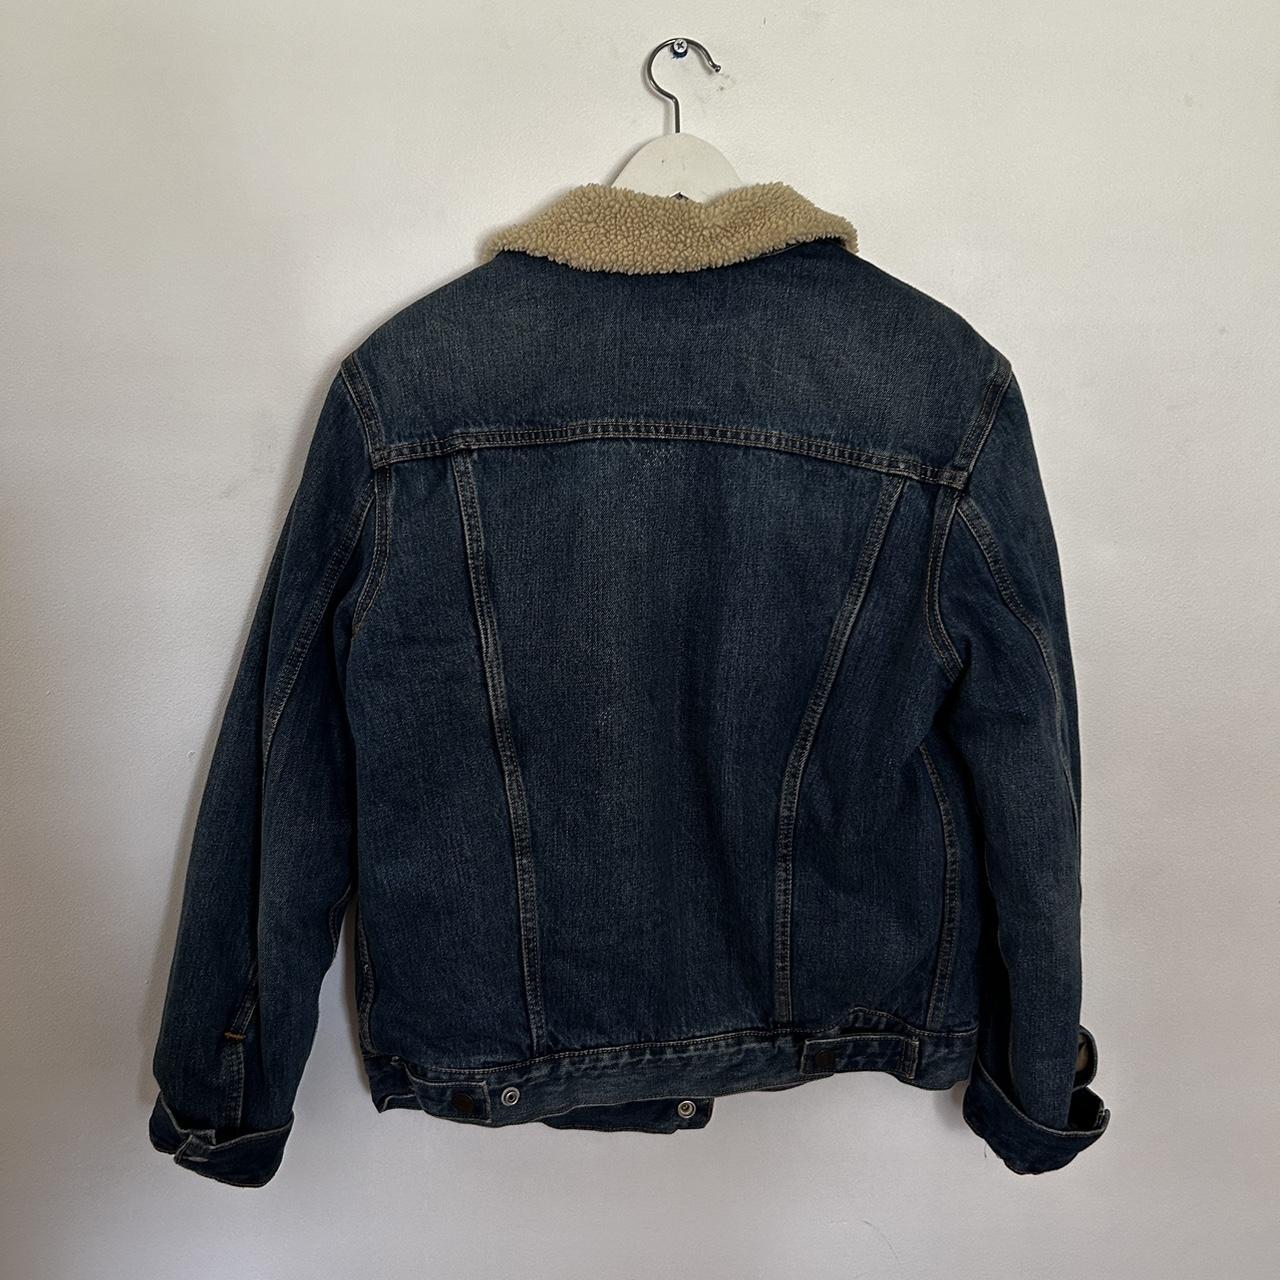 Levis denim jacket #levis #vintage #denim #jacket - Depop